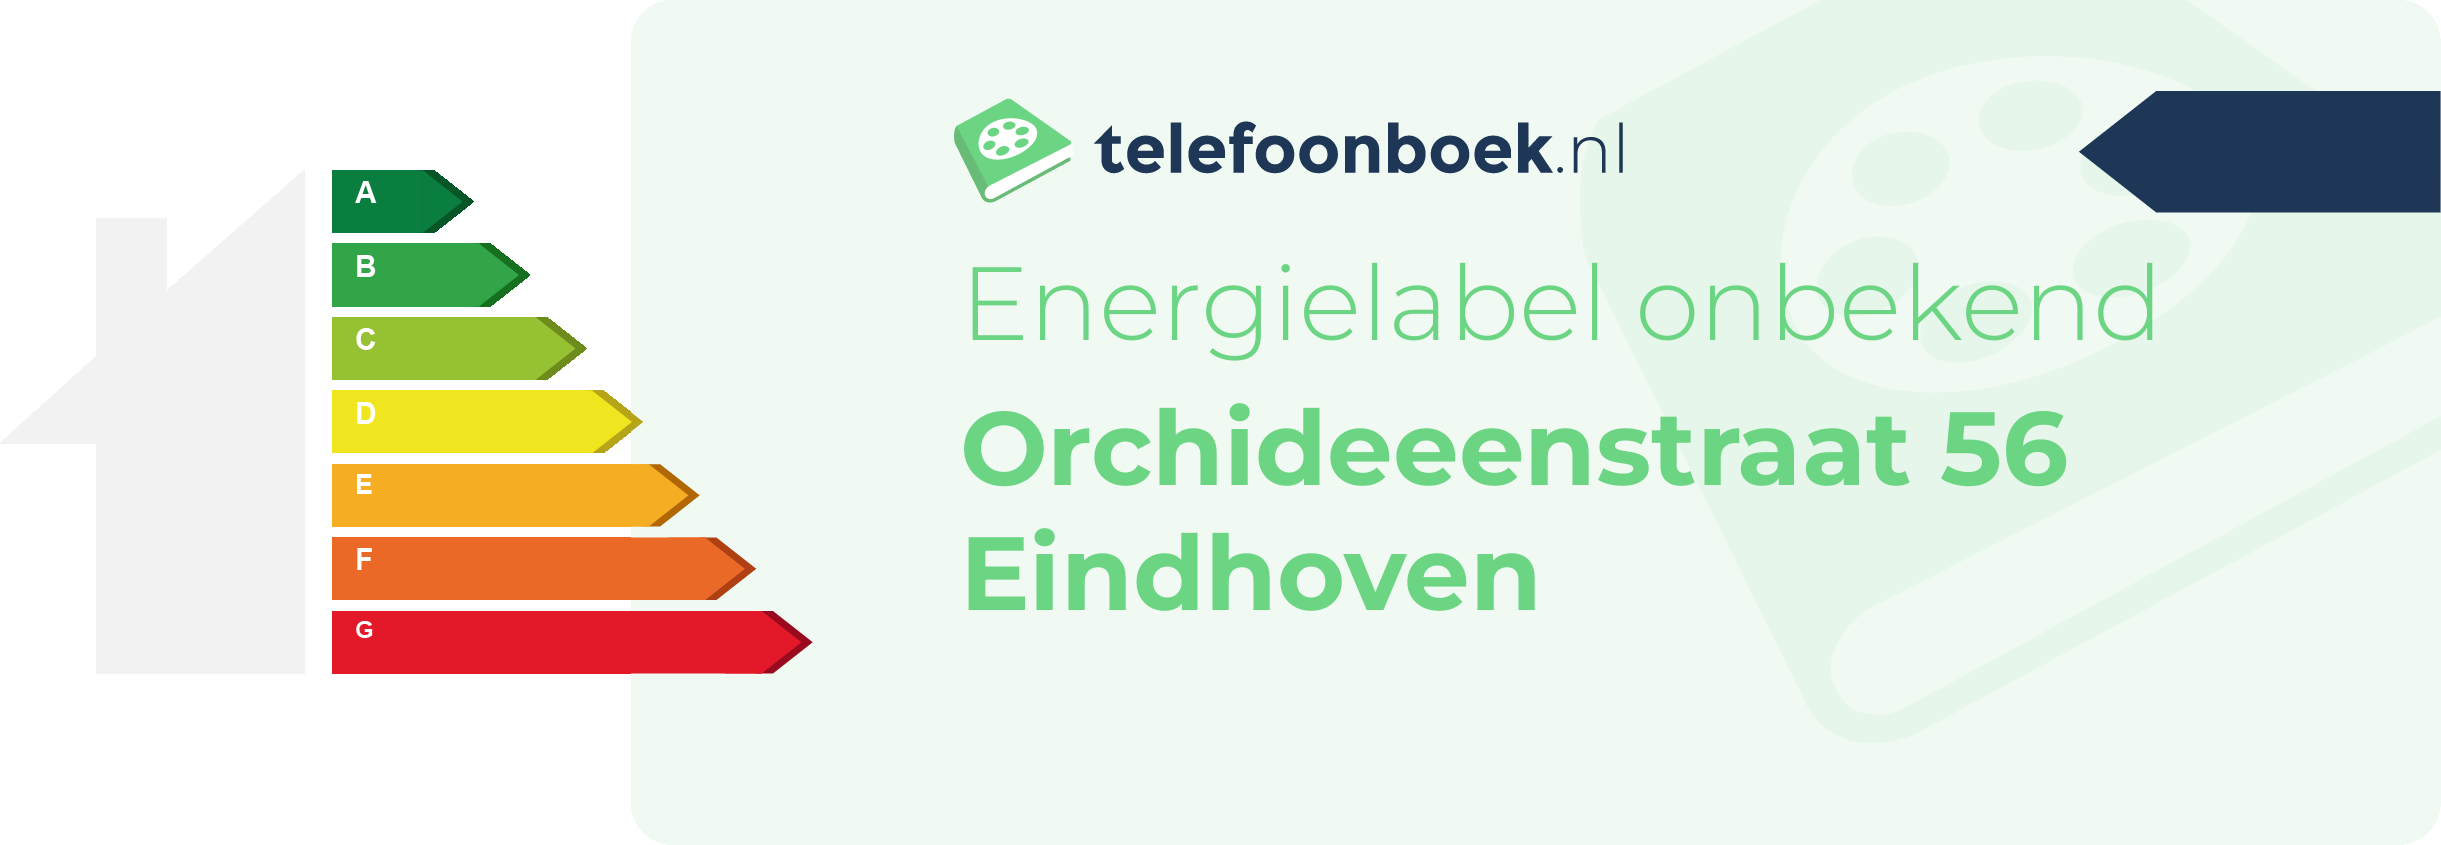 Energielabel Orchideeenstraat 56 Eindhoven